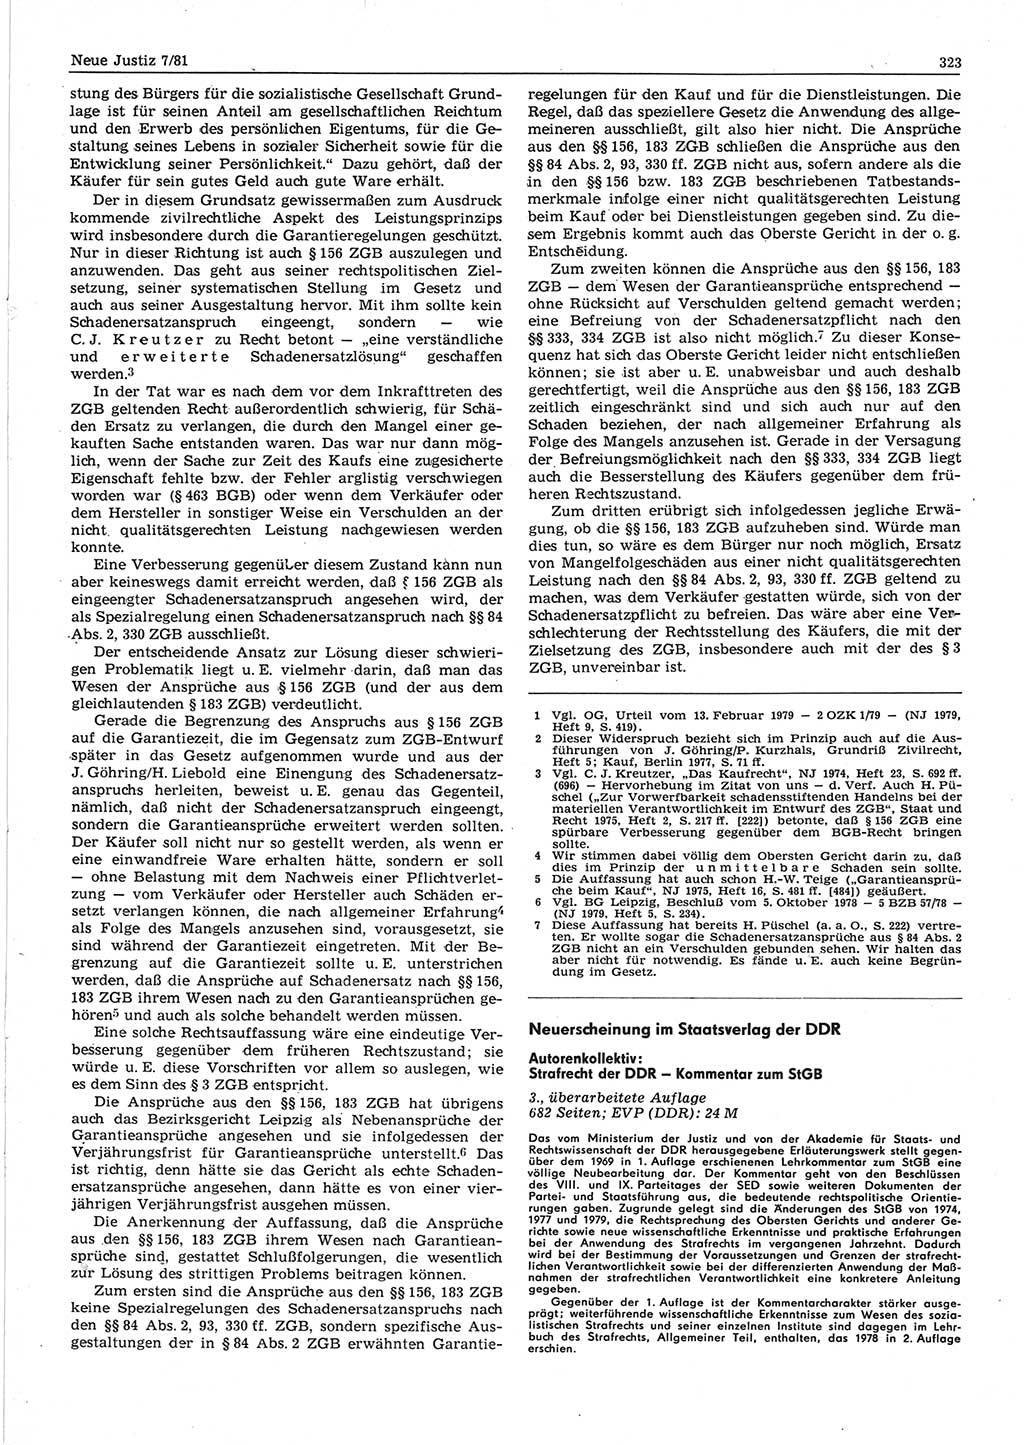 Neue Justiz (NJ), Zeitschrift für sozialistisches Recht und Gesetzlichkeit [Deutsche Demokratische Republik (DDR)], 35. Jahrgang 1981, Seite 323 (NJ DDR 1981, S. 323)